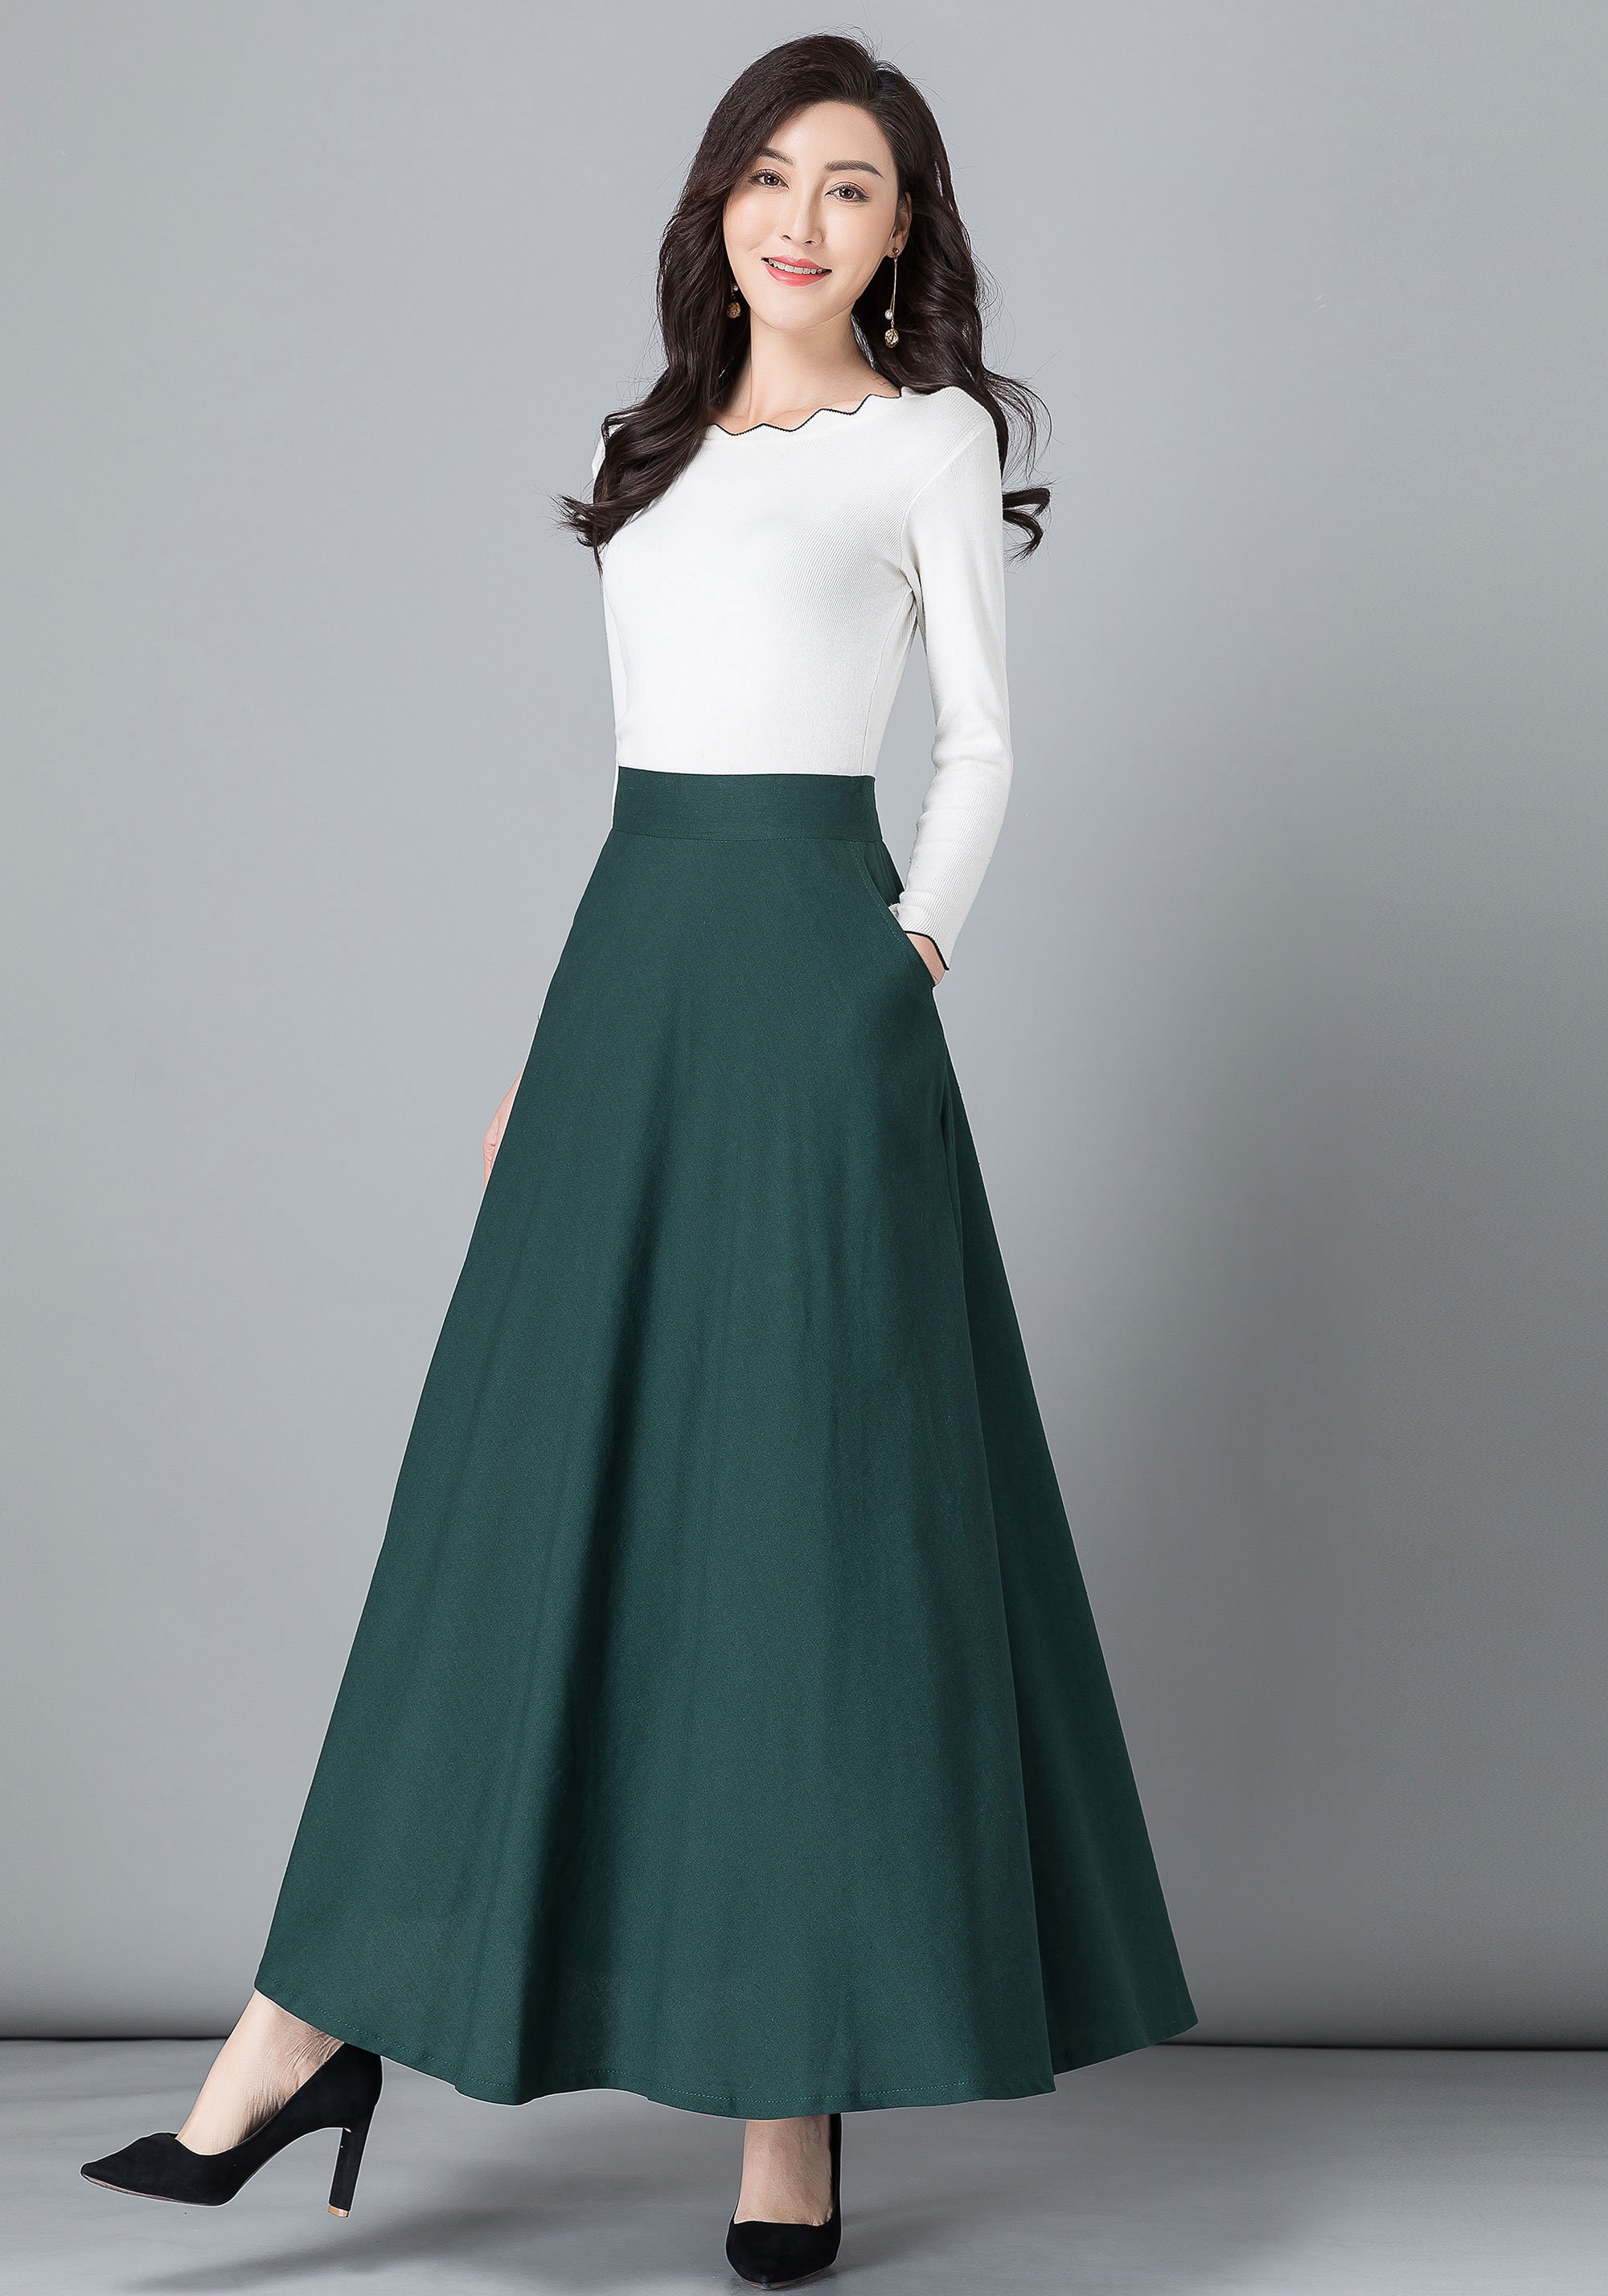 Green Linen Skirt Maxi Cotton Linen Skirt Elastic Waist | Etsy